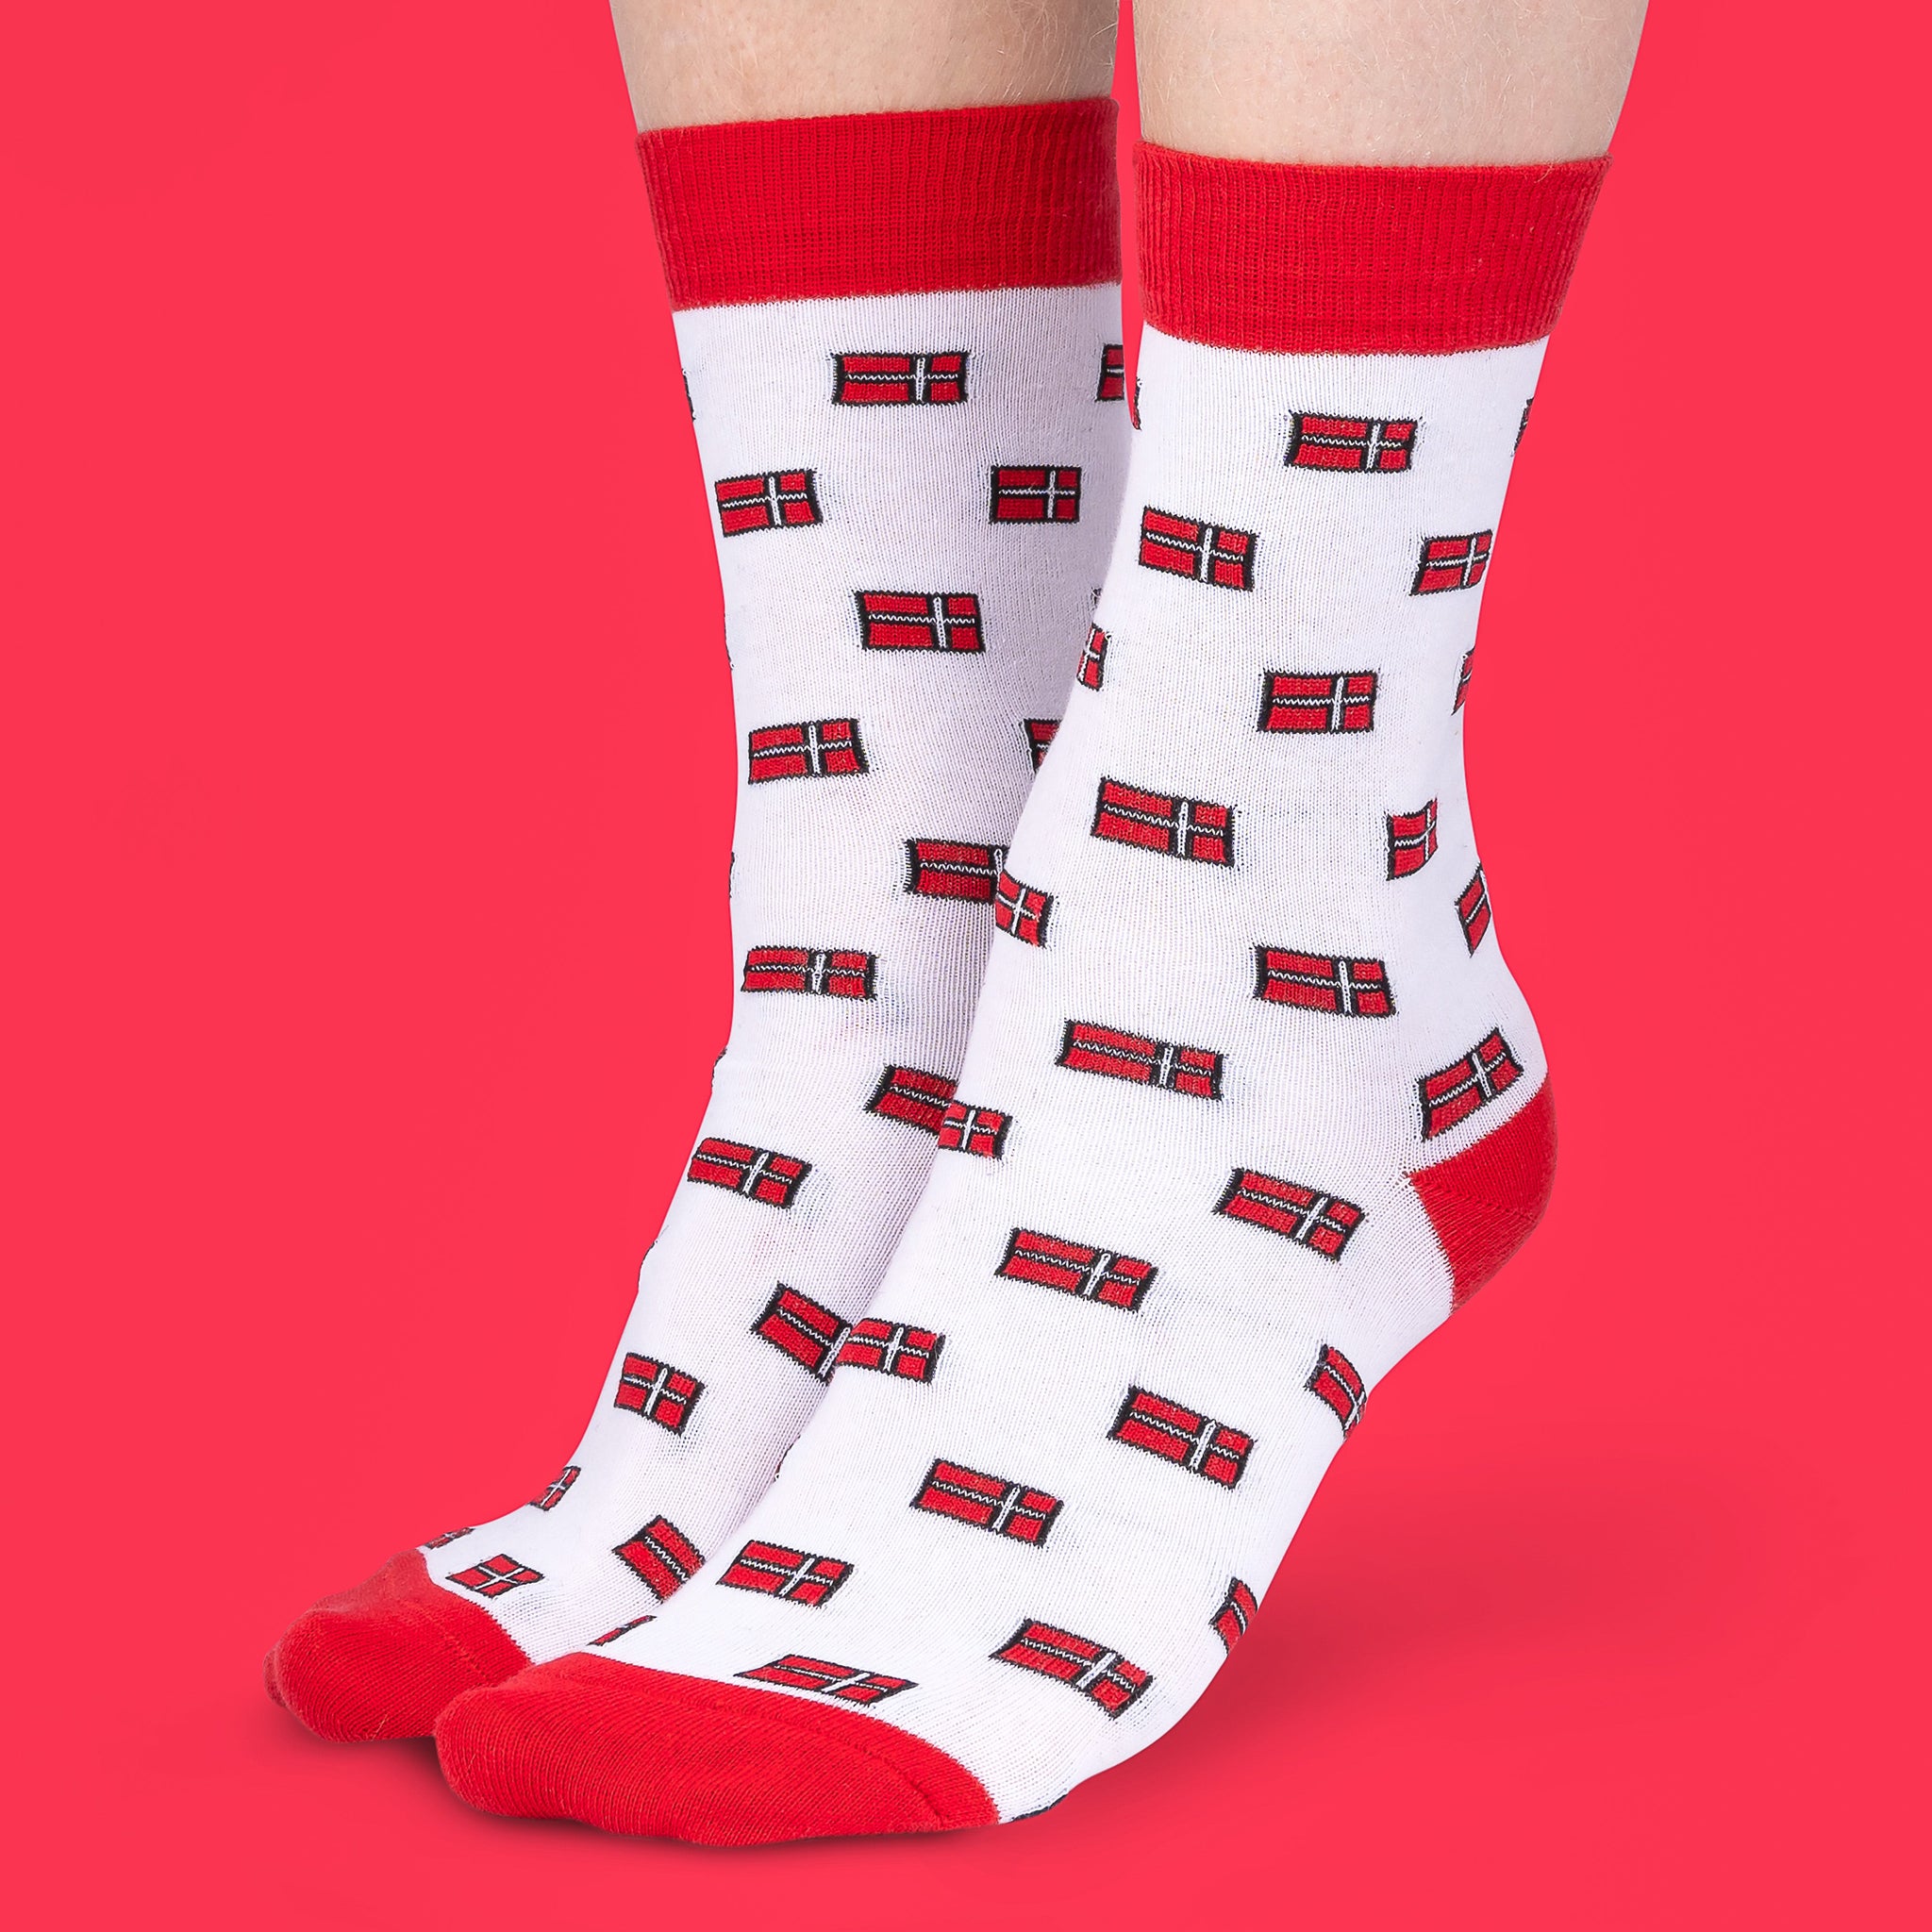 Danish Socks - Denmark Flag